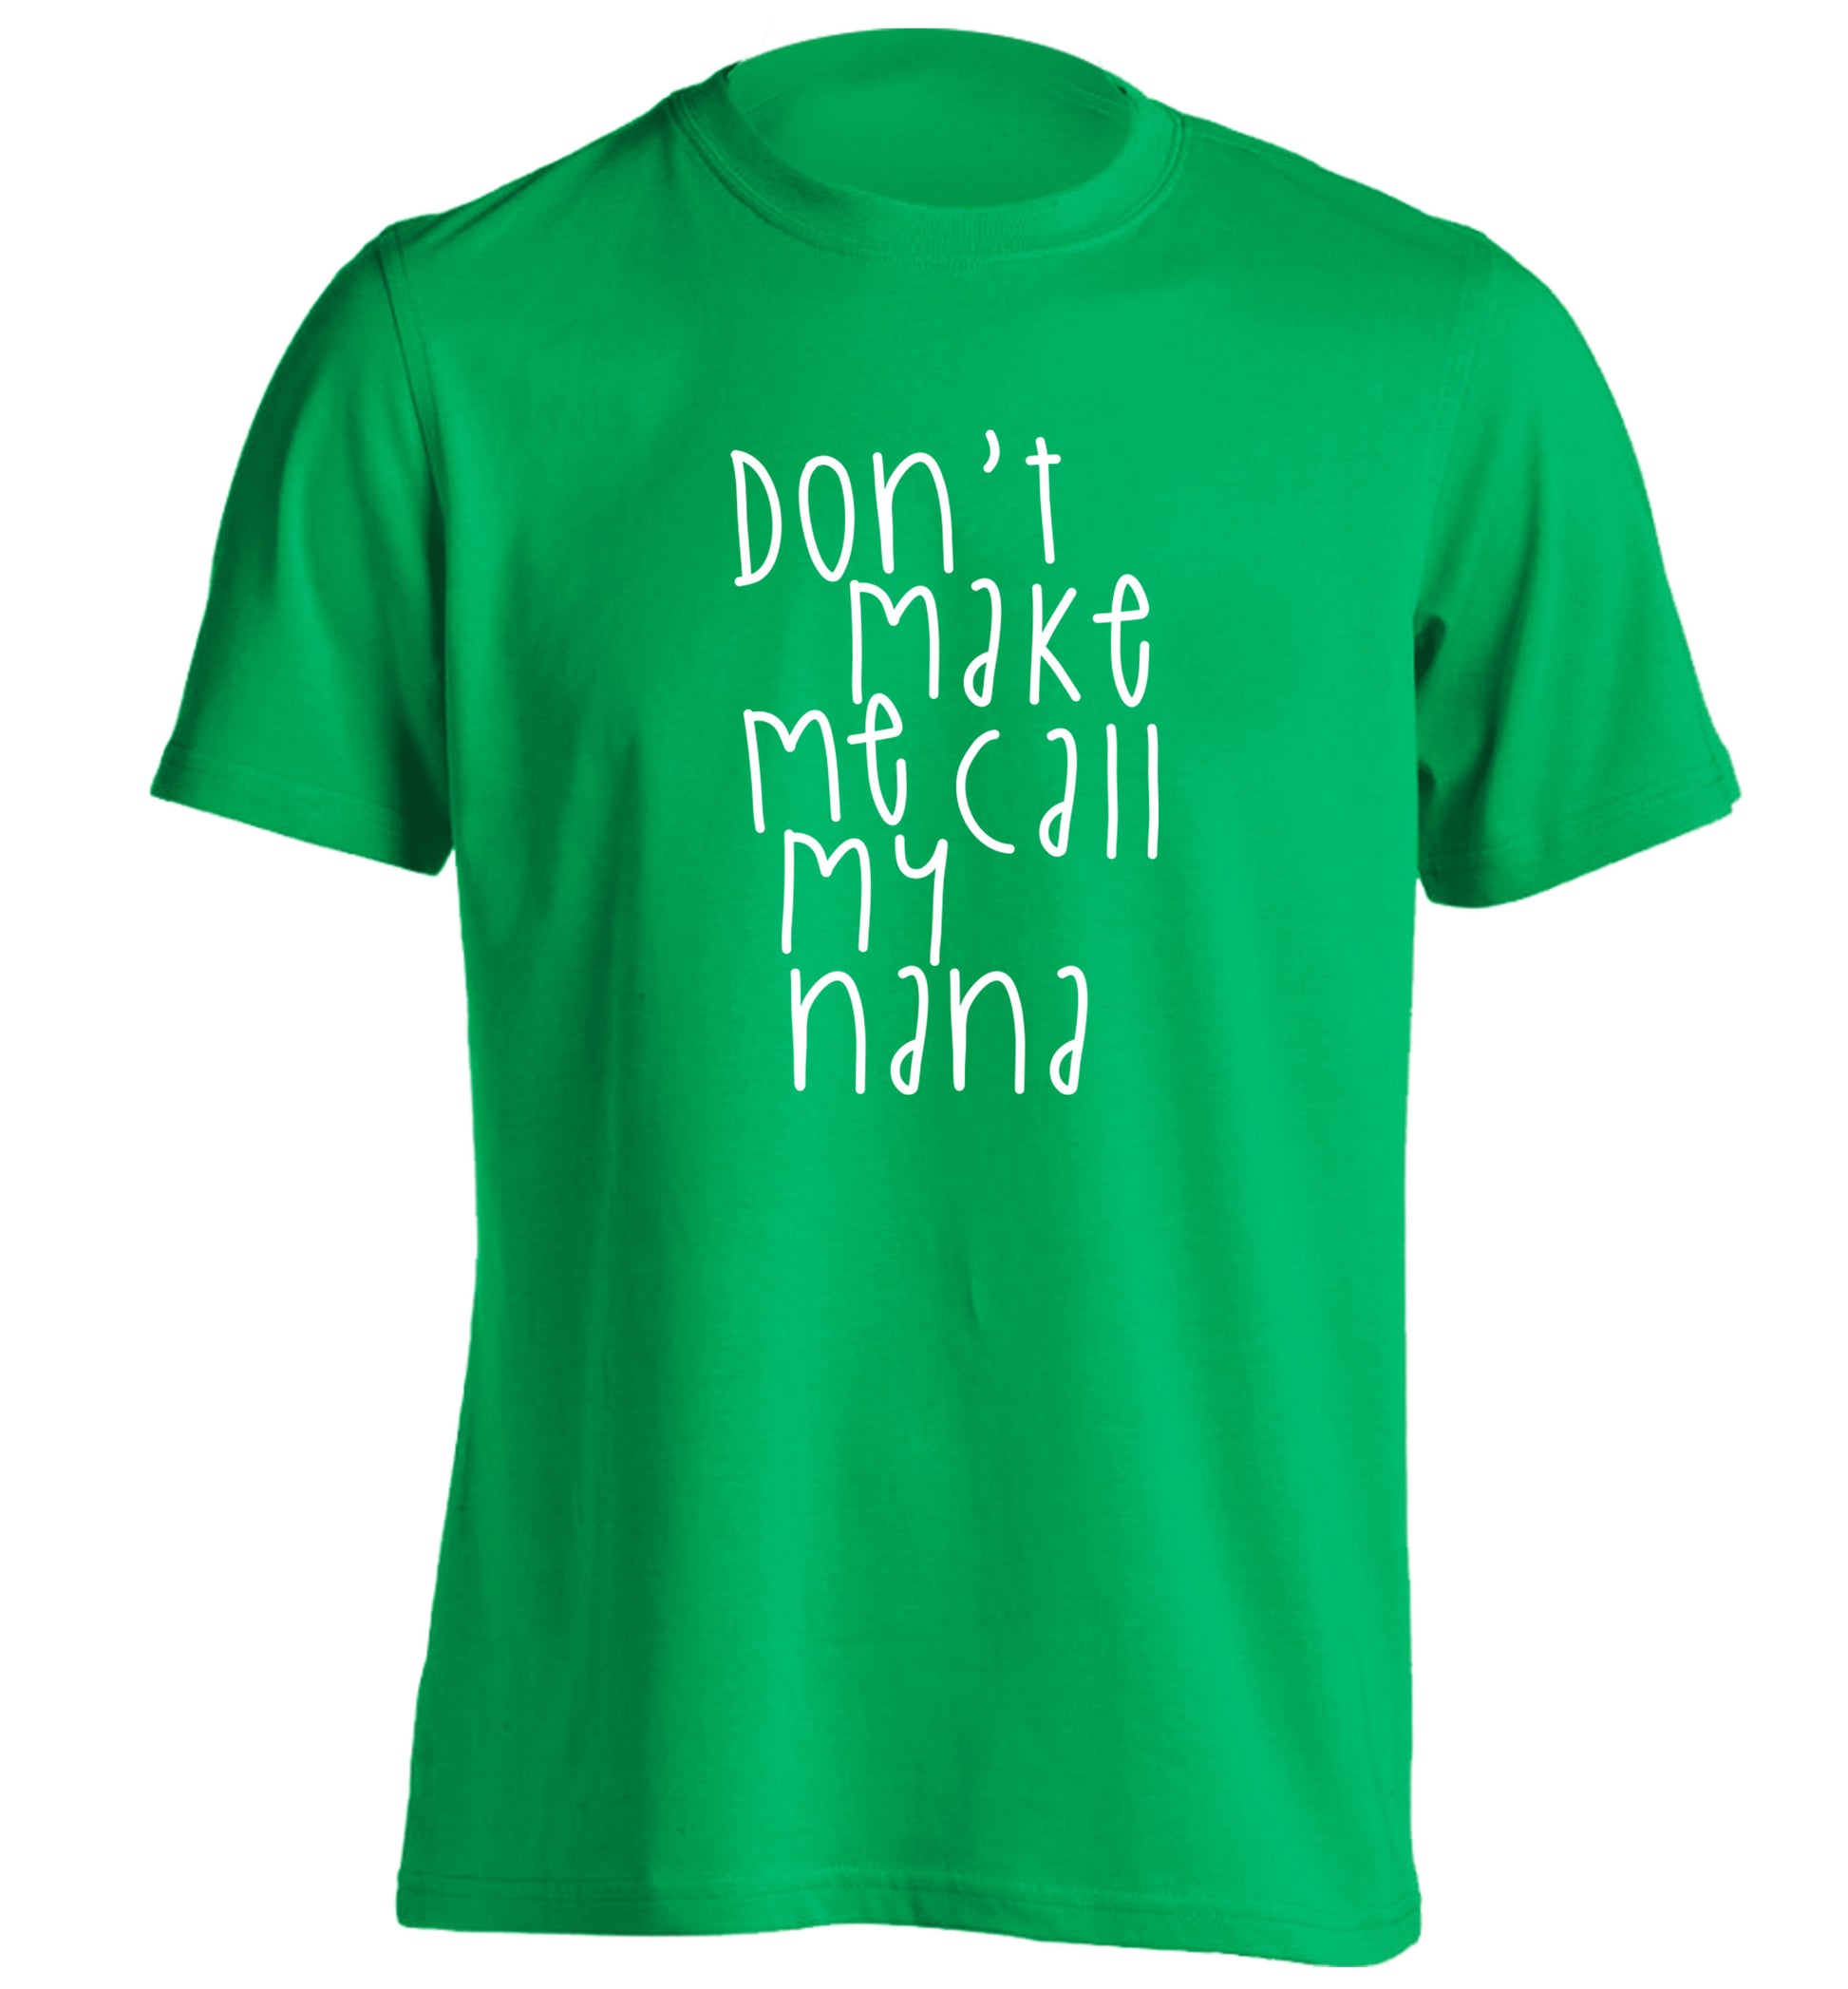 Don't make me call my nana adults unisex green Tshirt 2XL